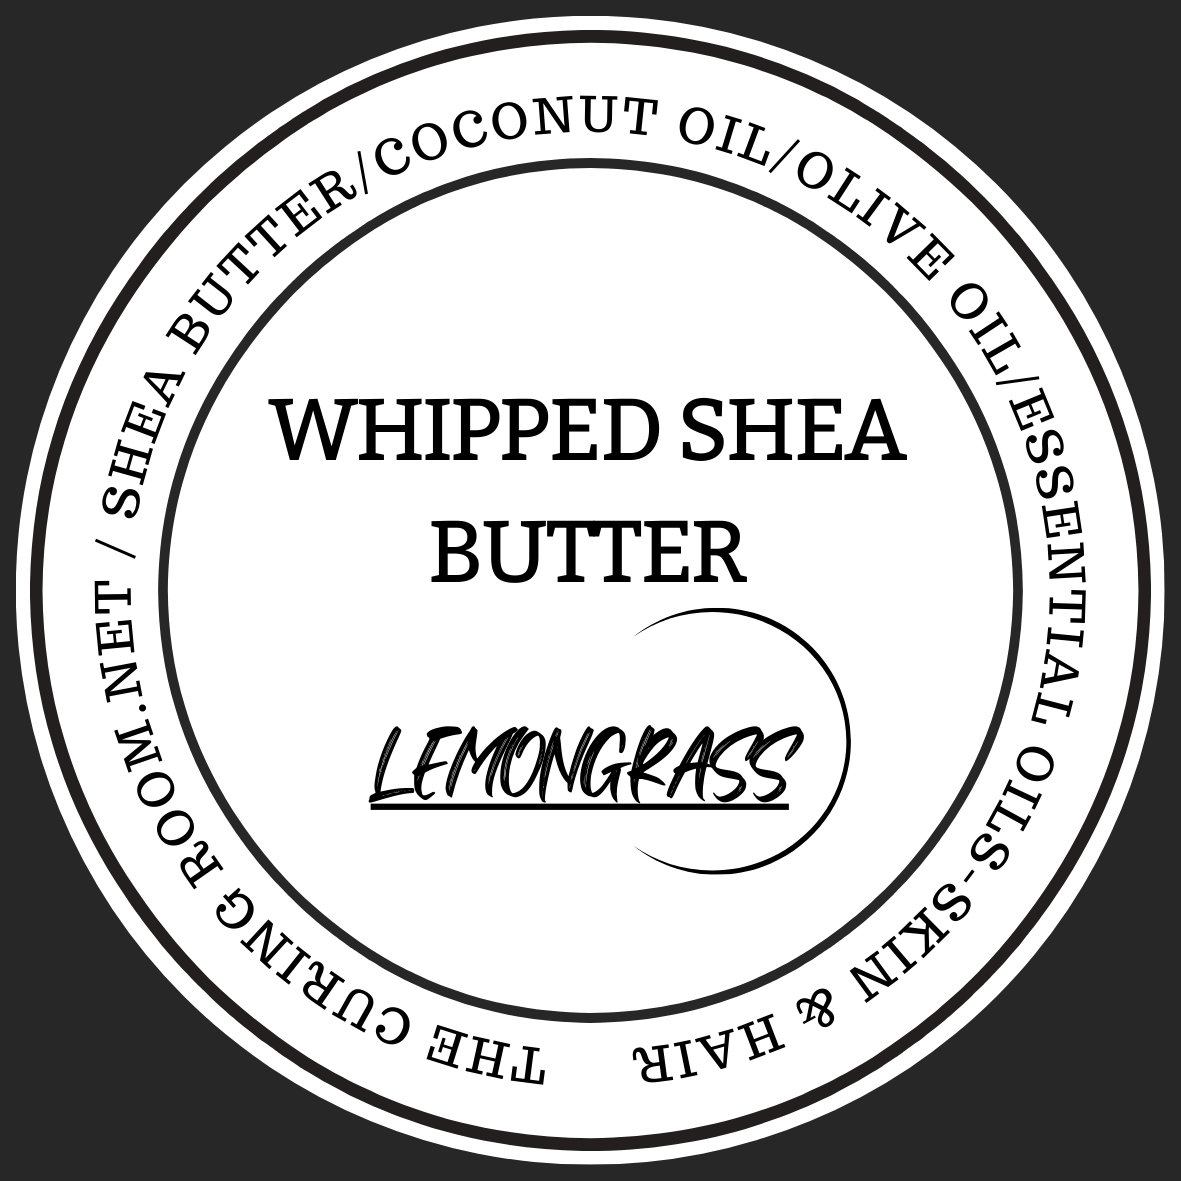 Whipped Shea Butter Lemongrass